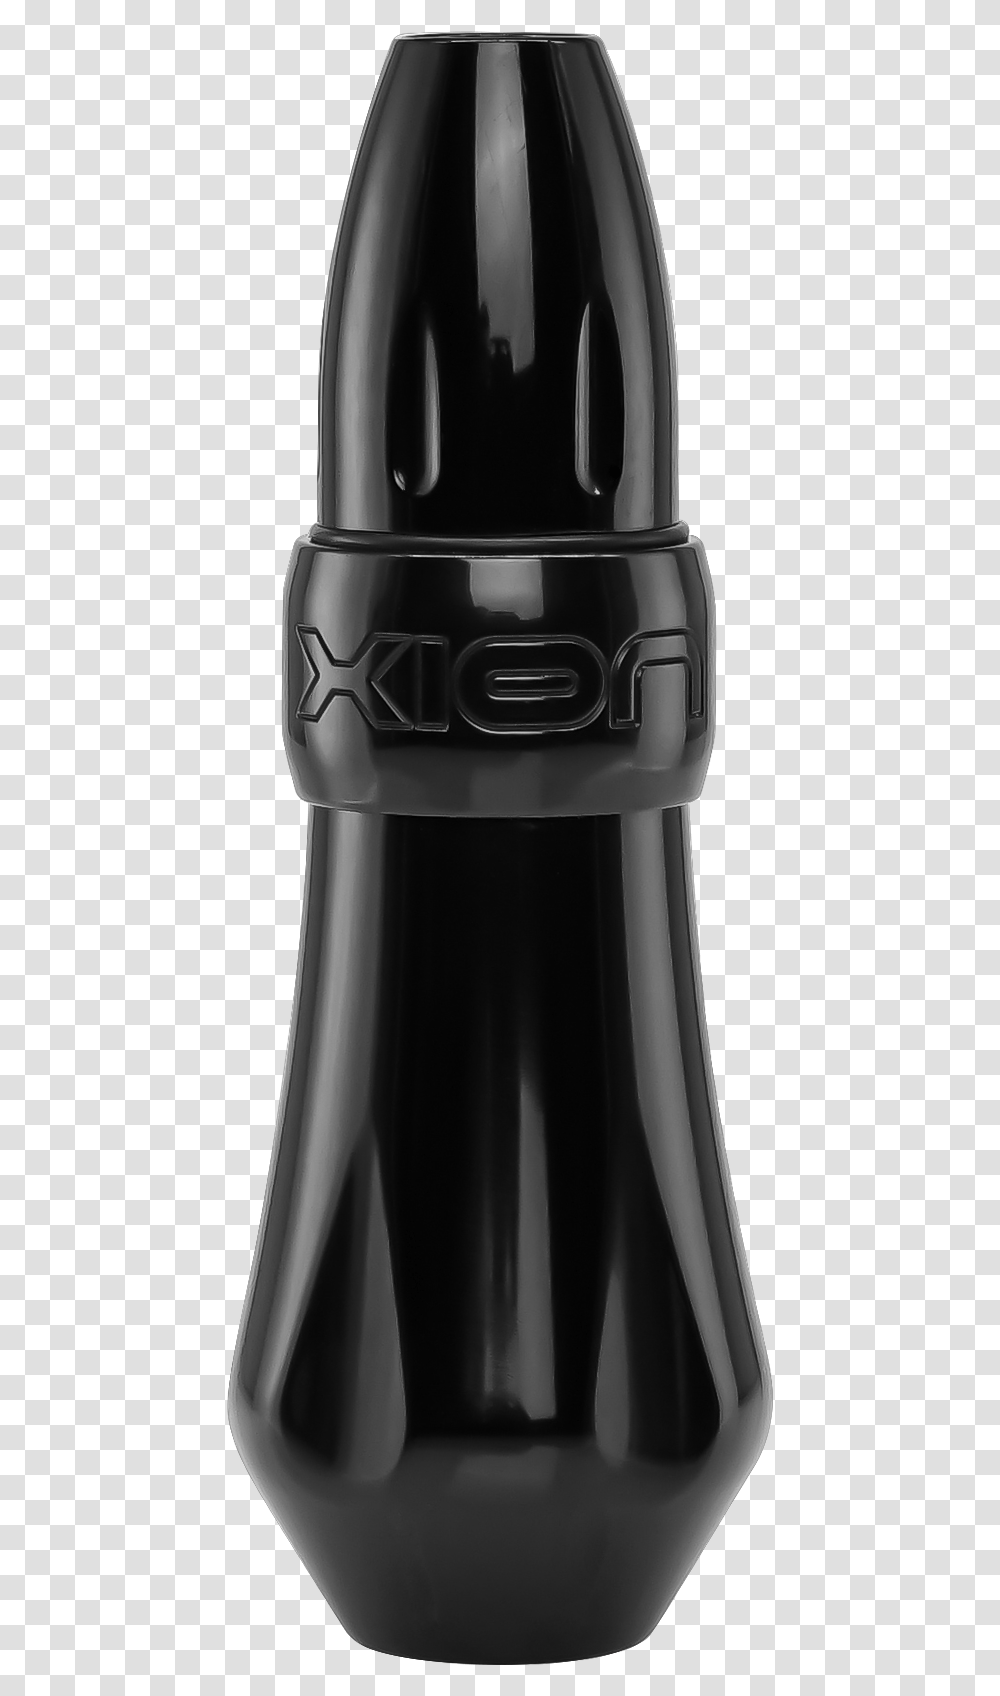 Fk Irons Xion Gorilla, Beverage, Drink, Alcohol, Bottle Transparent Png